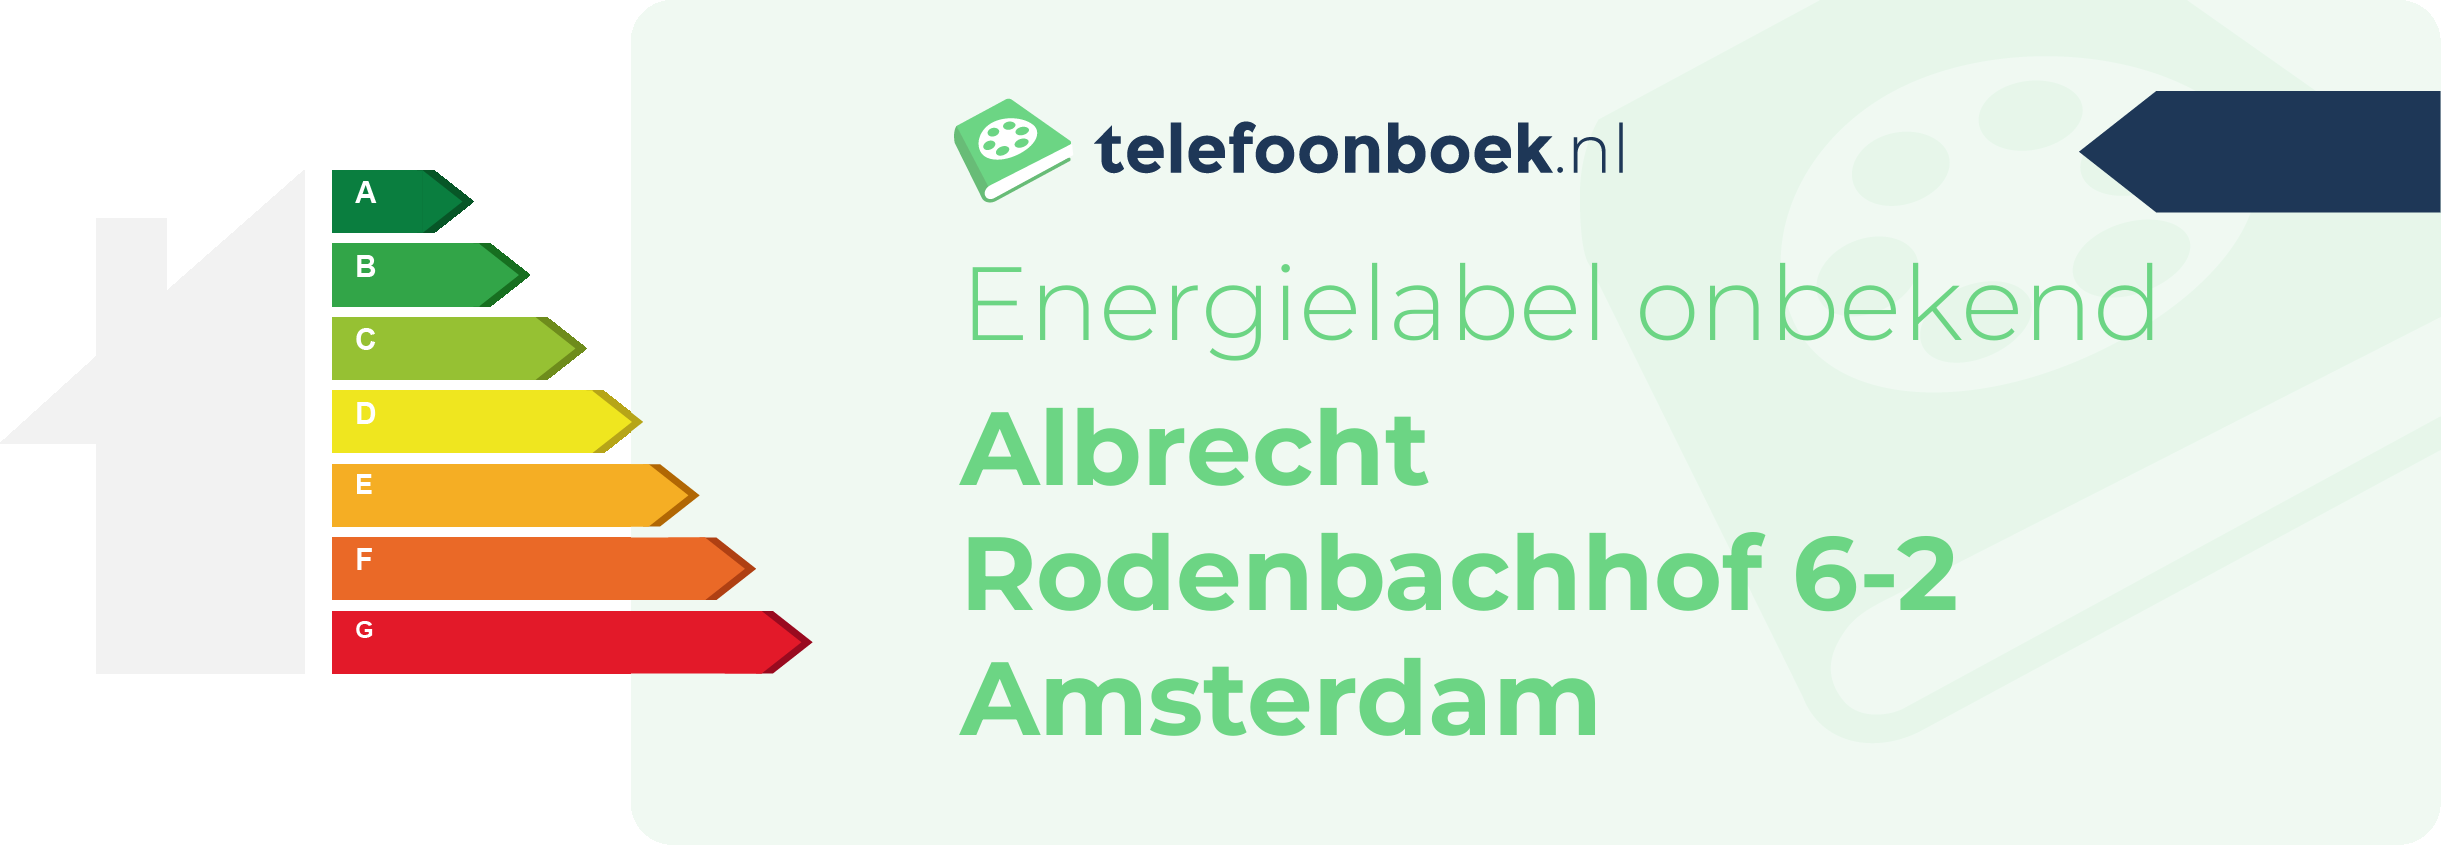 Energielabel Albrecht Rodenbachhof 6-2 Amsterdam